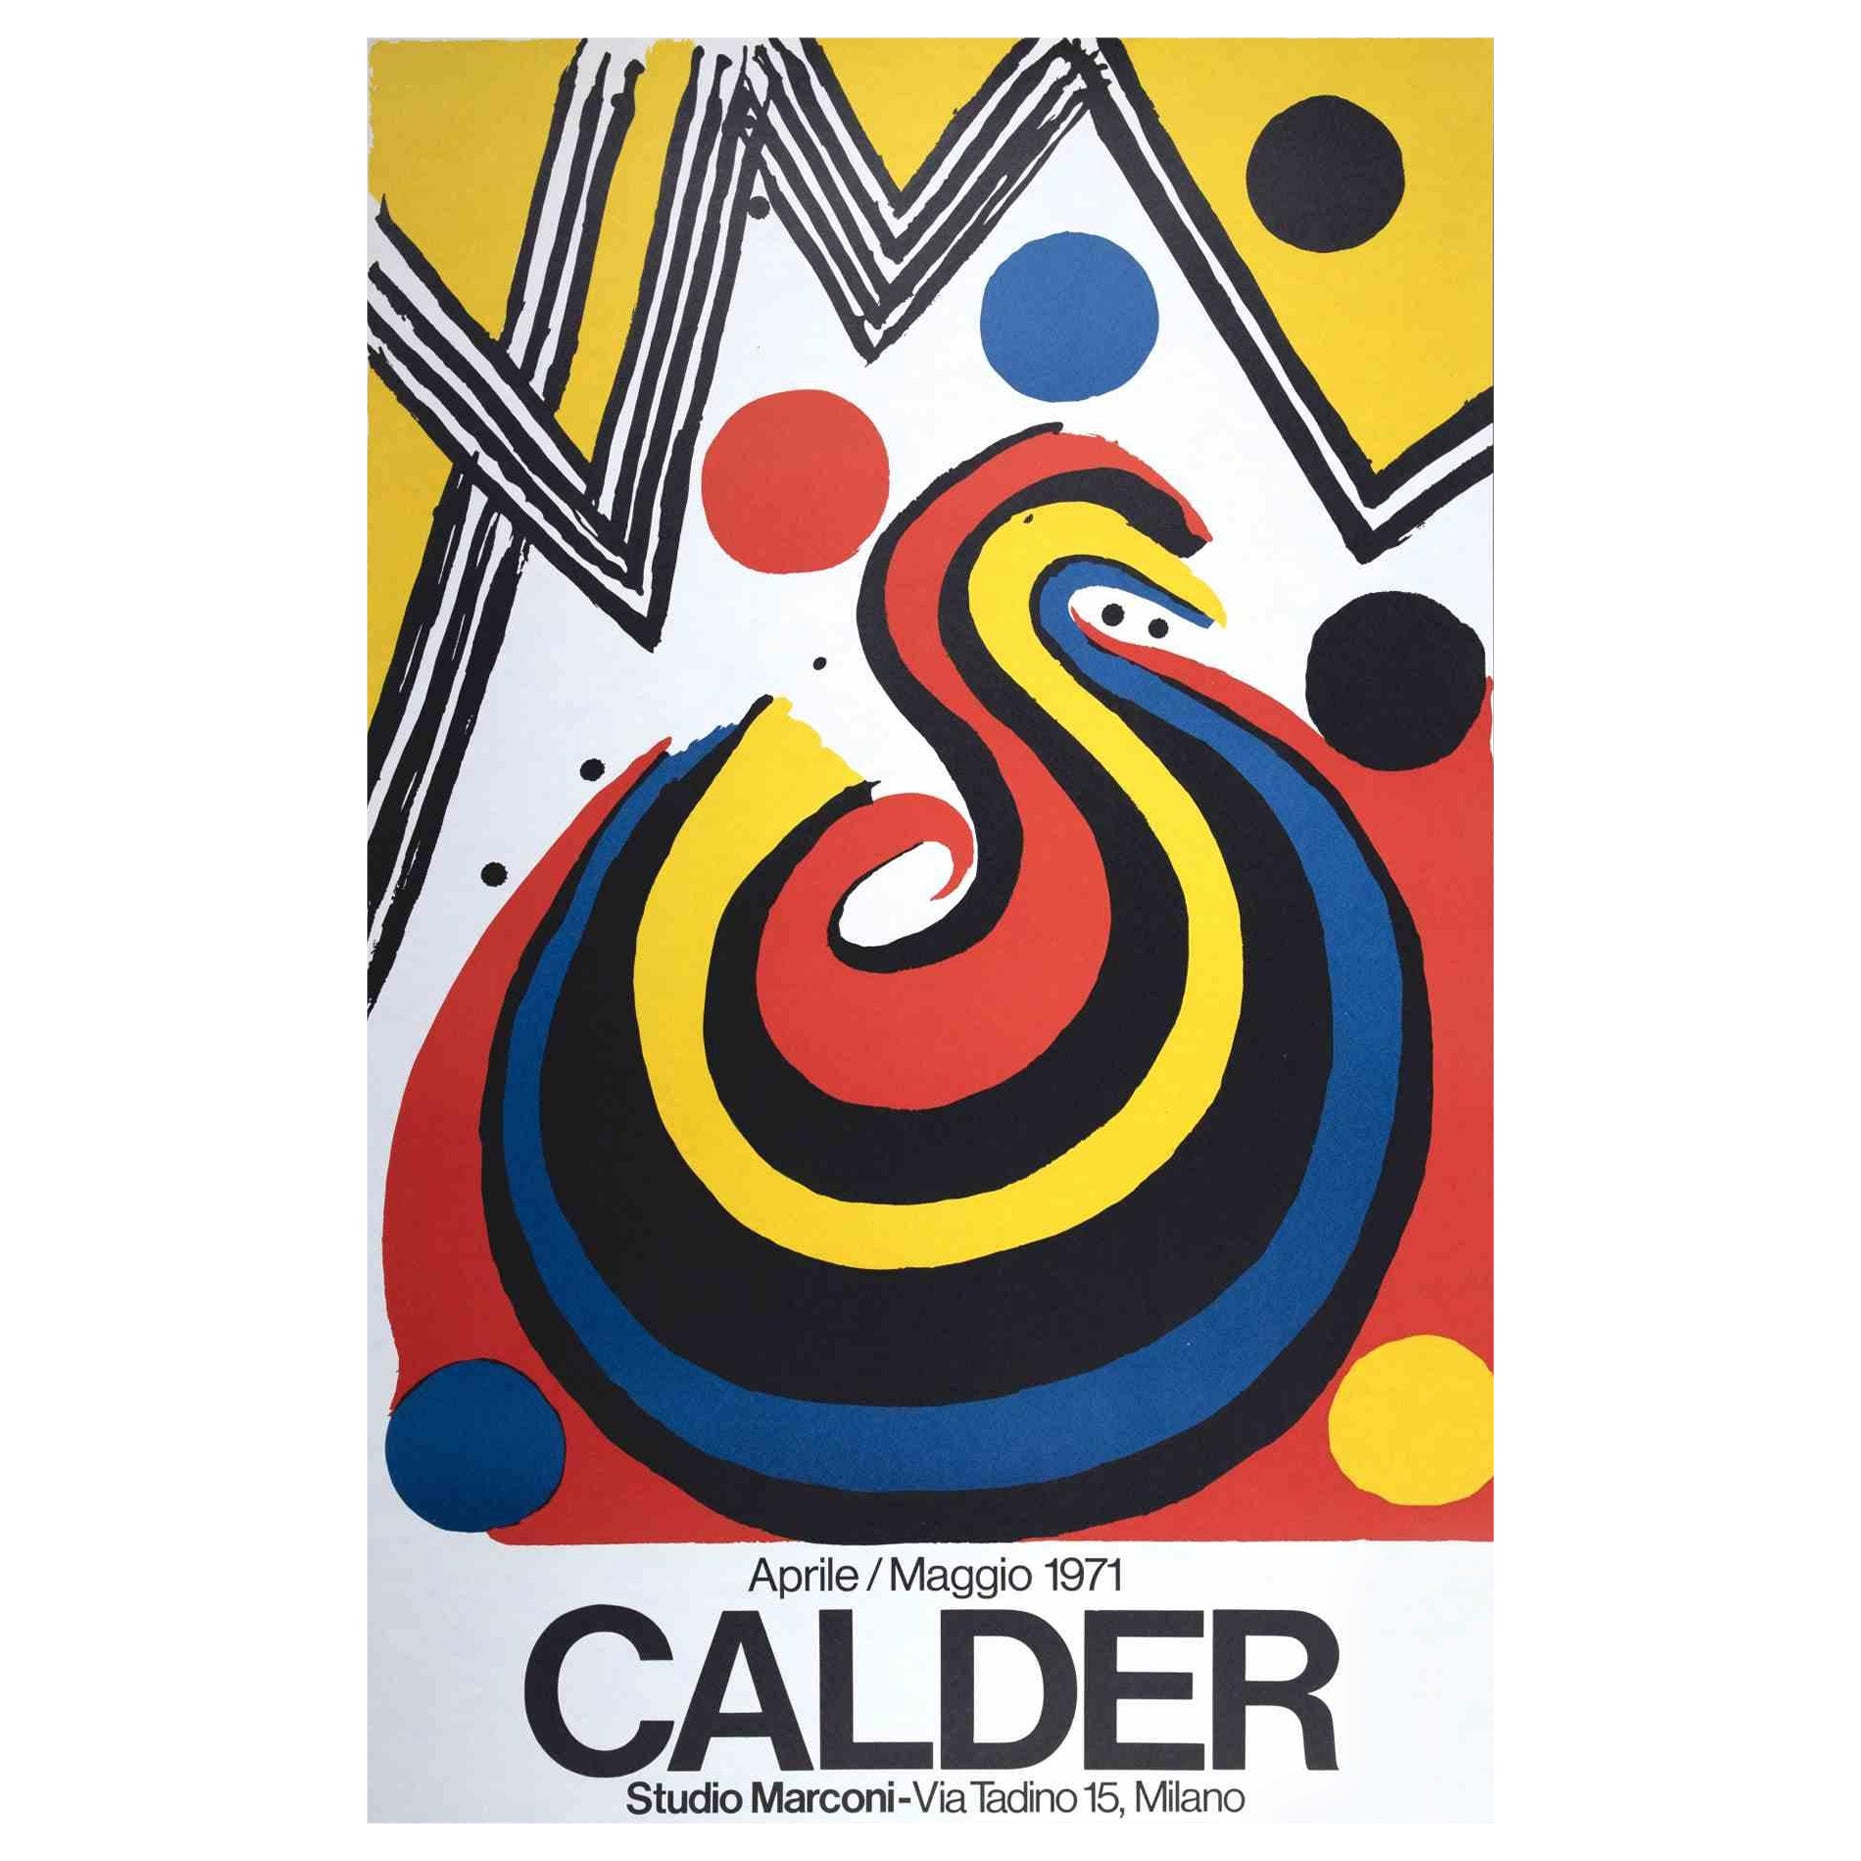 Alexander Calder - Poster Exhibition est une rare impression offset et lithographie en couleurs mixtes réalisée en 1971

Cette estampe a été réalisée à l'occasion de l'exposition consacrée à l'artiste et tenue à la galerie Studio Marconi de Milan en